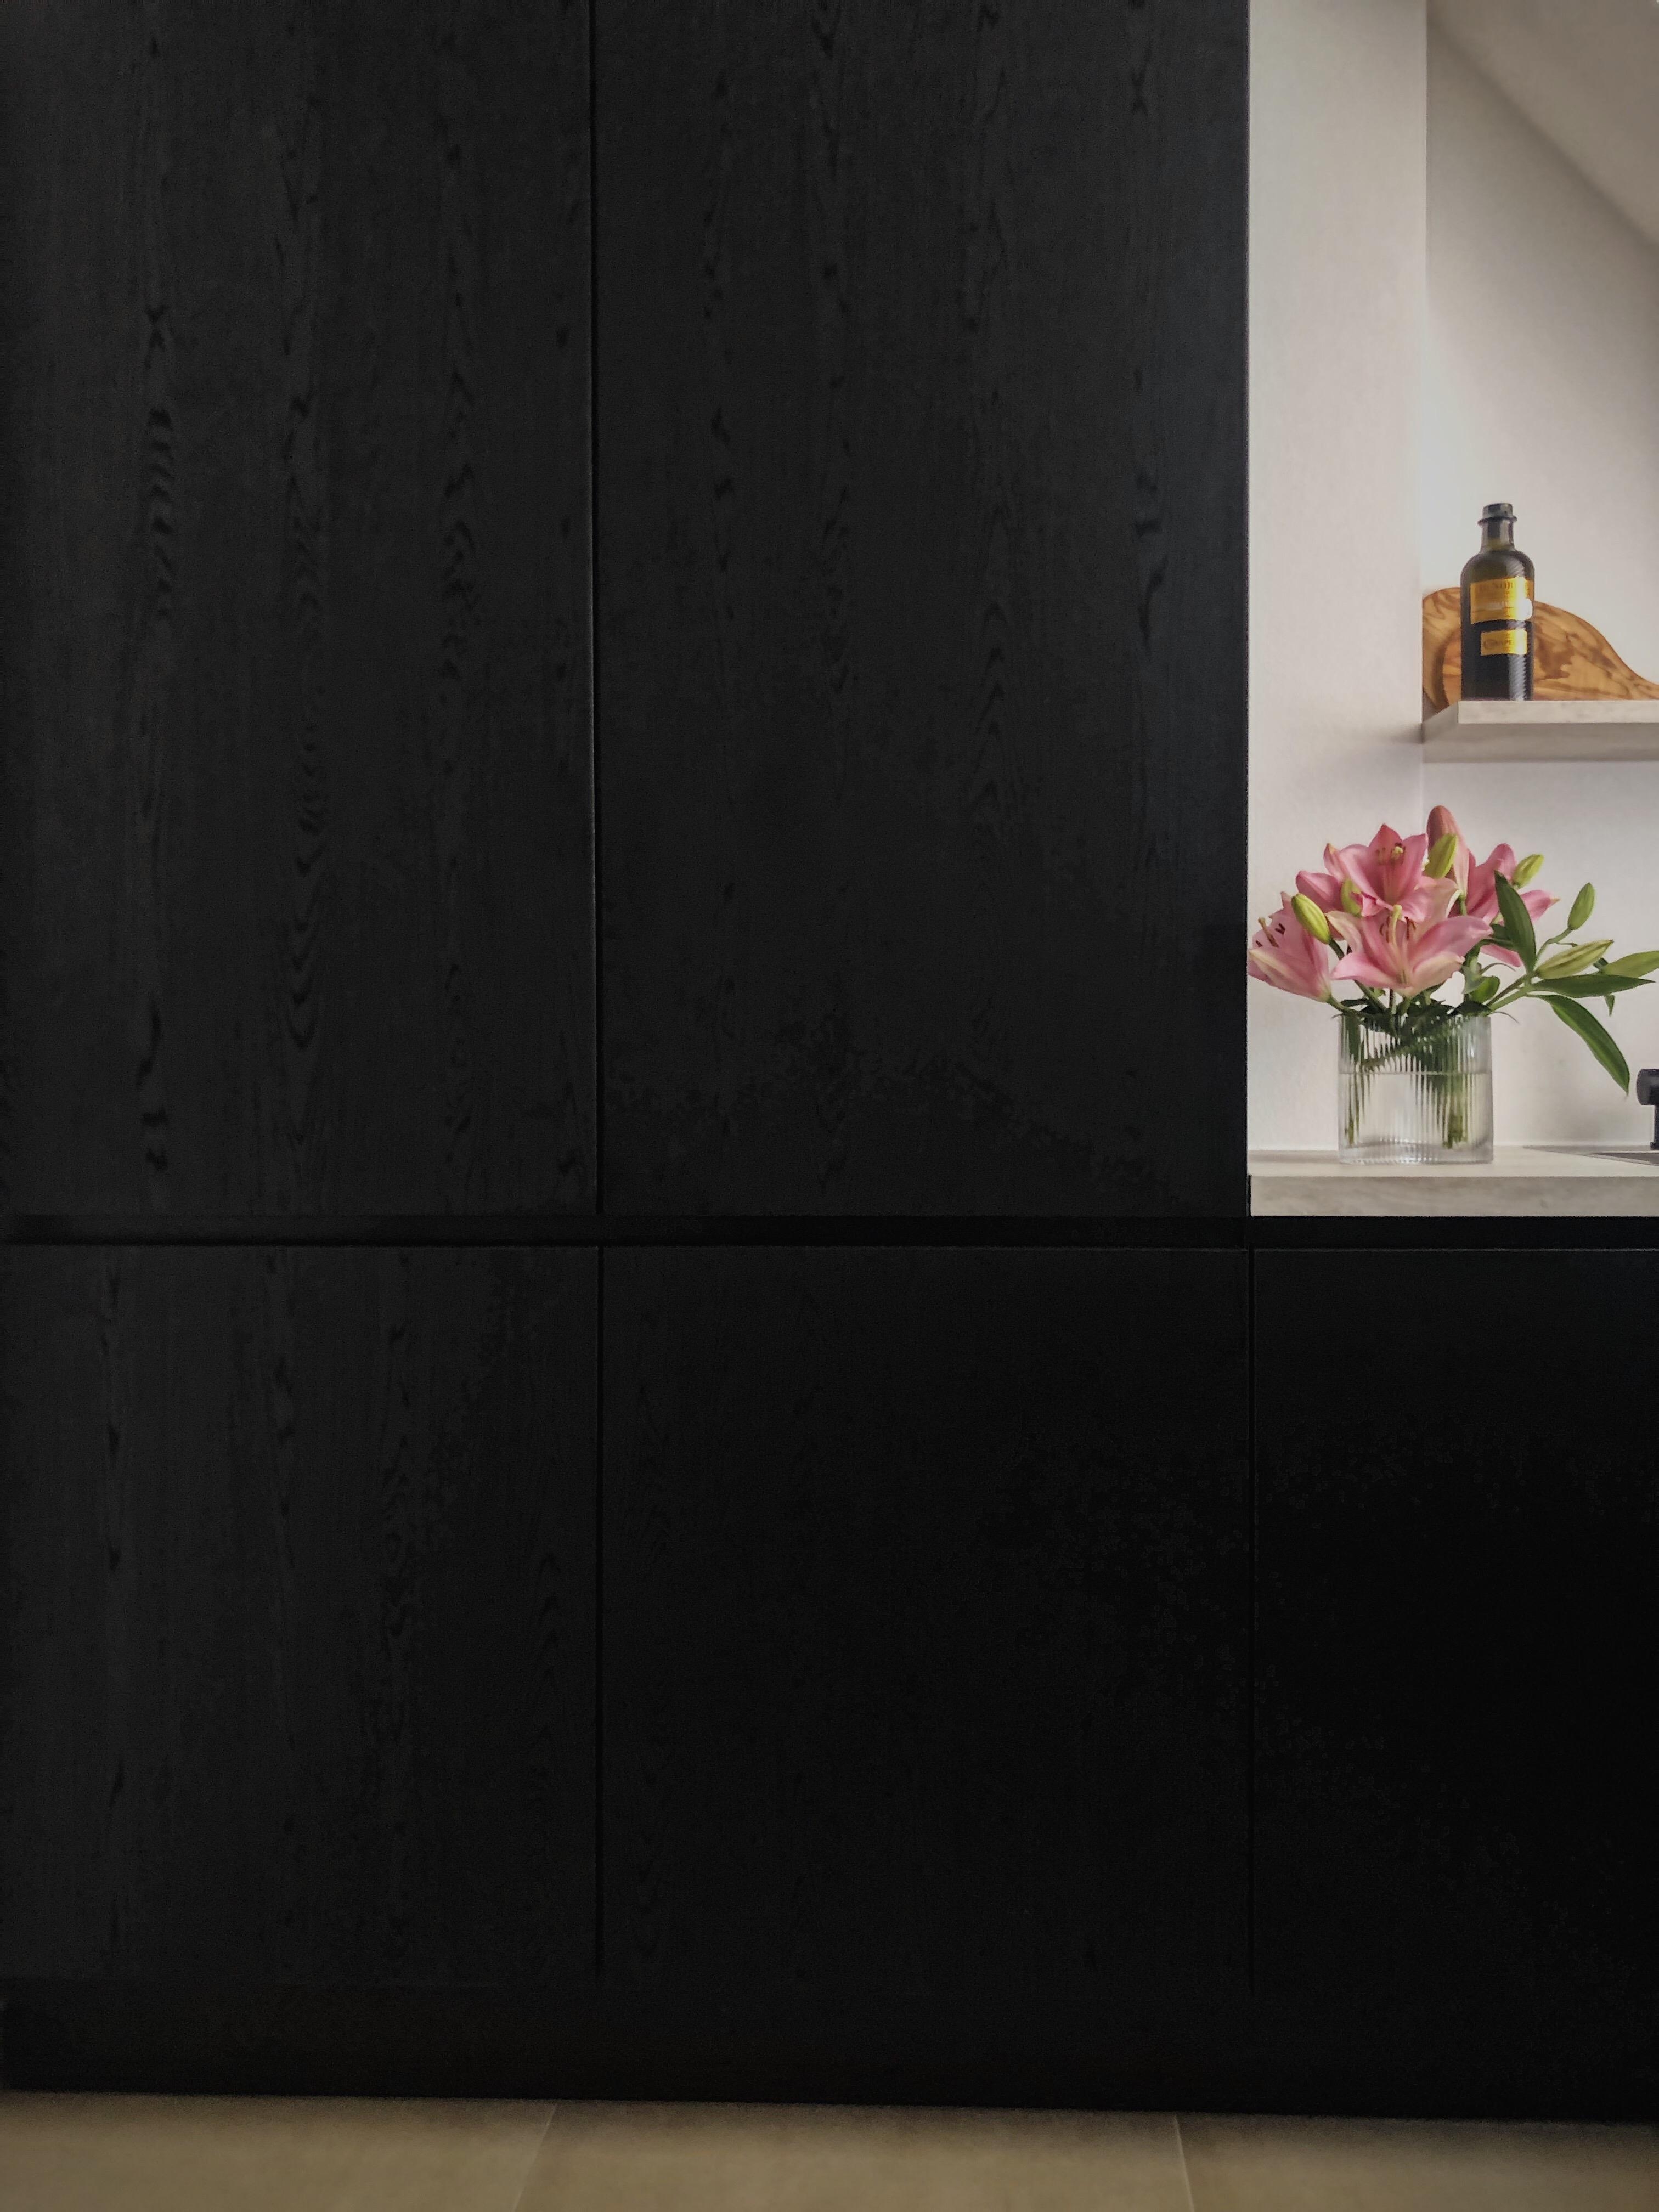 I have such an affinity for 🖤 wood.
#kitchen #black #interior #blackkitchen #kitchenstories #texture #wood #midcentury 